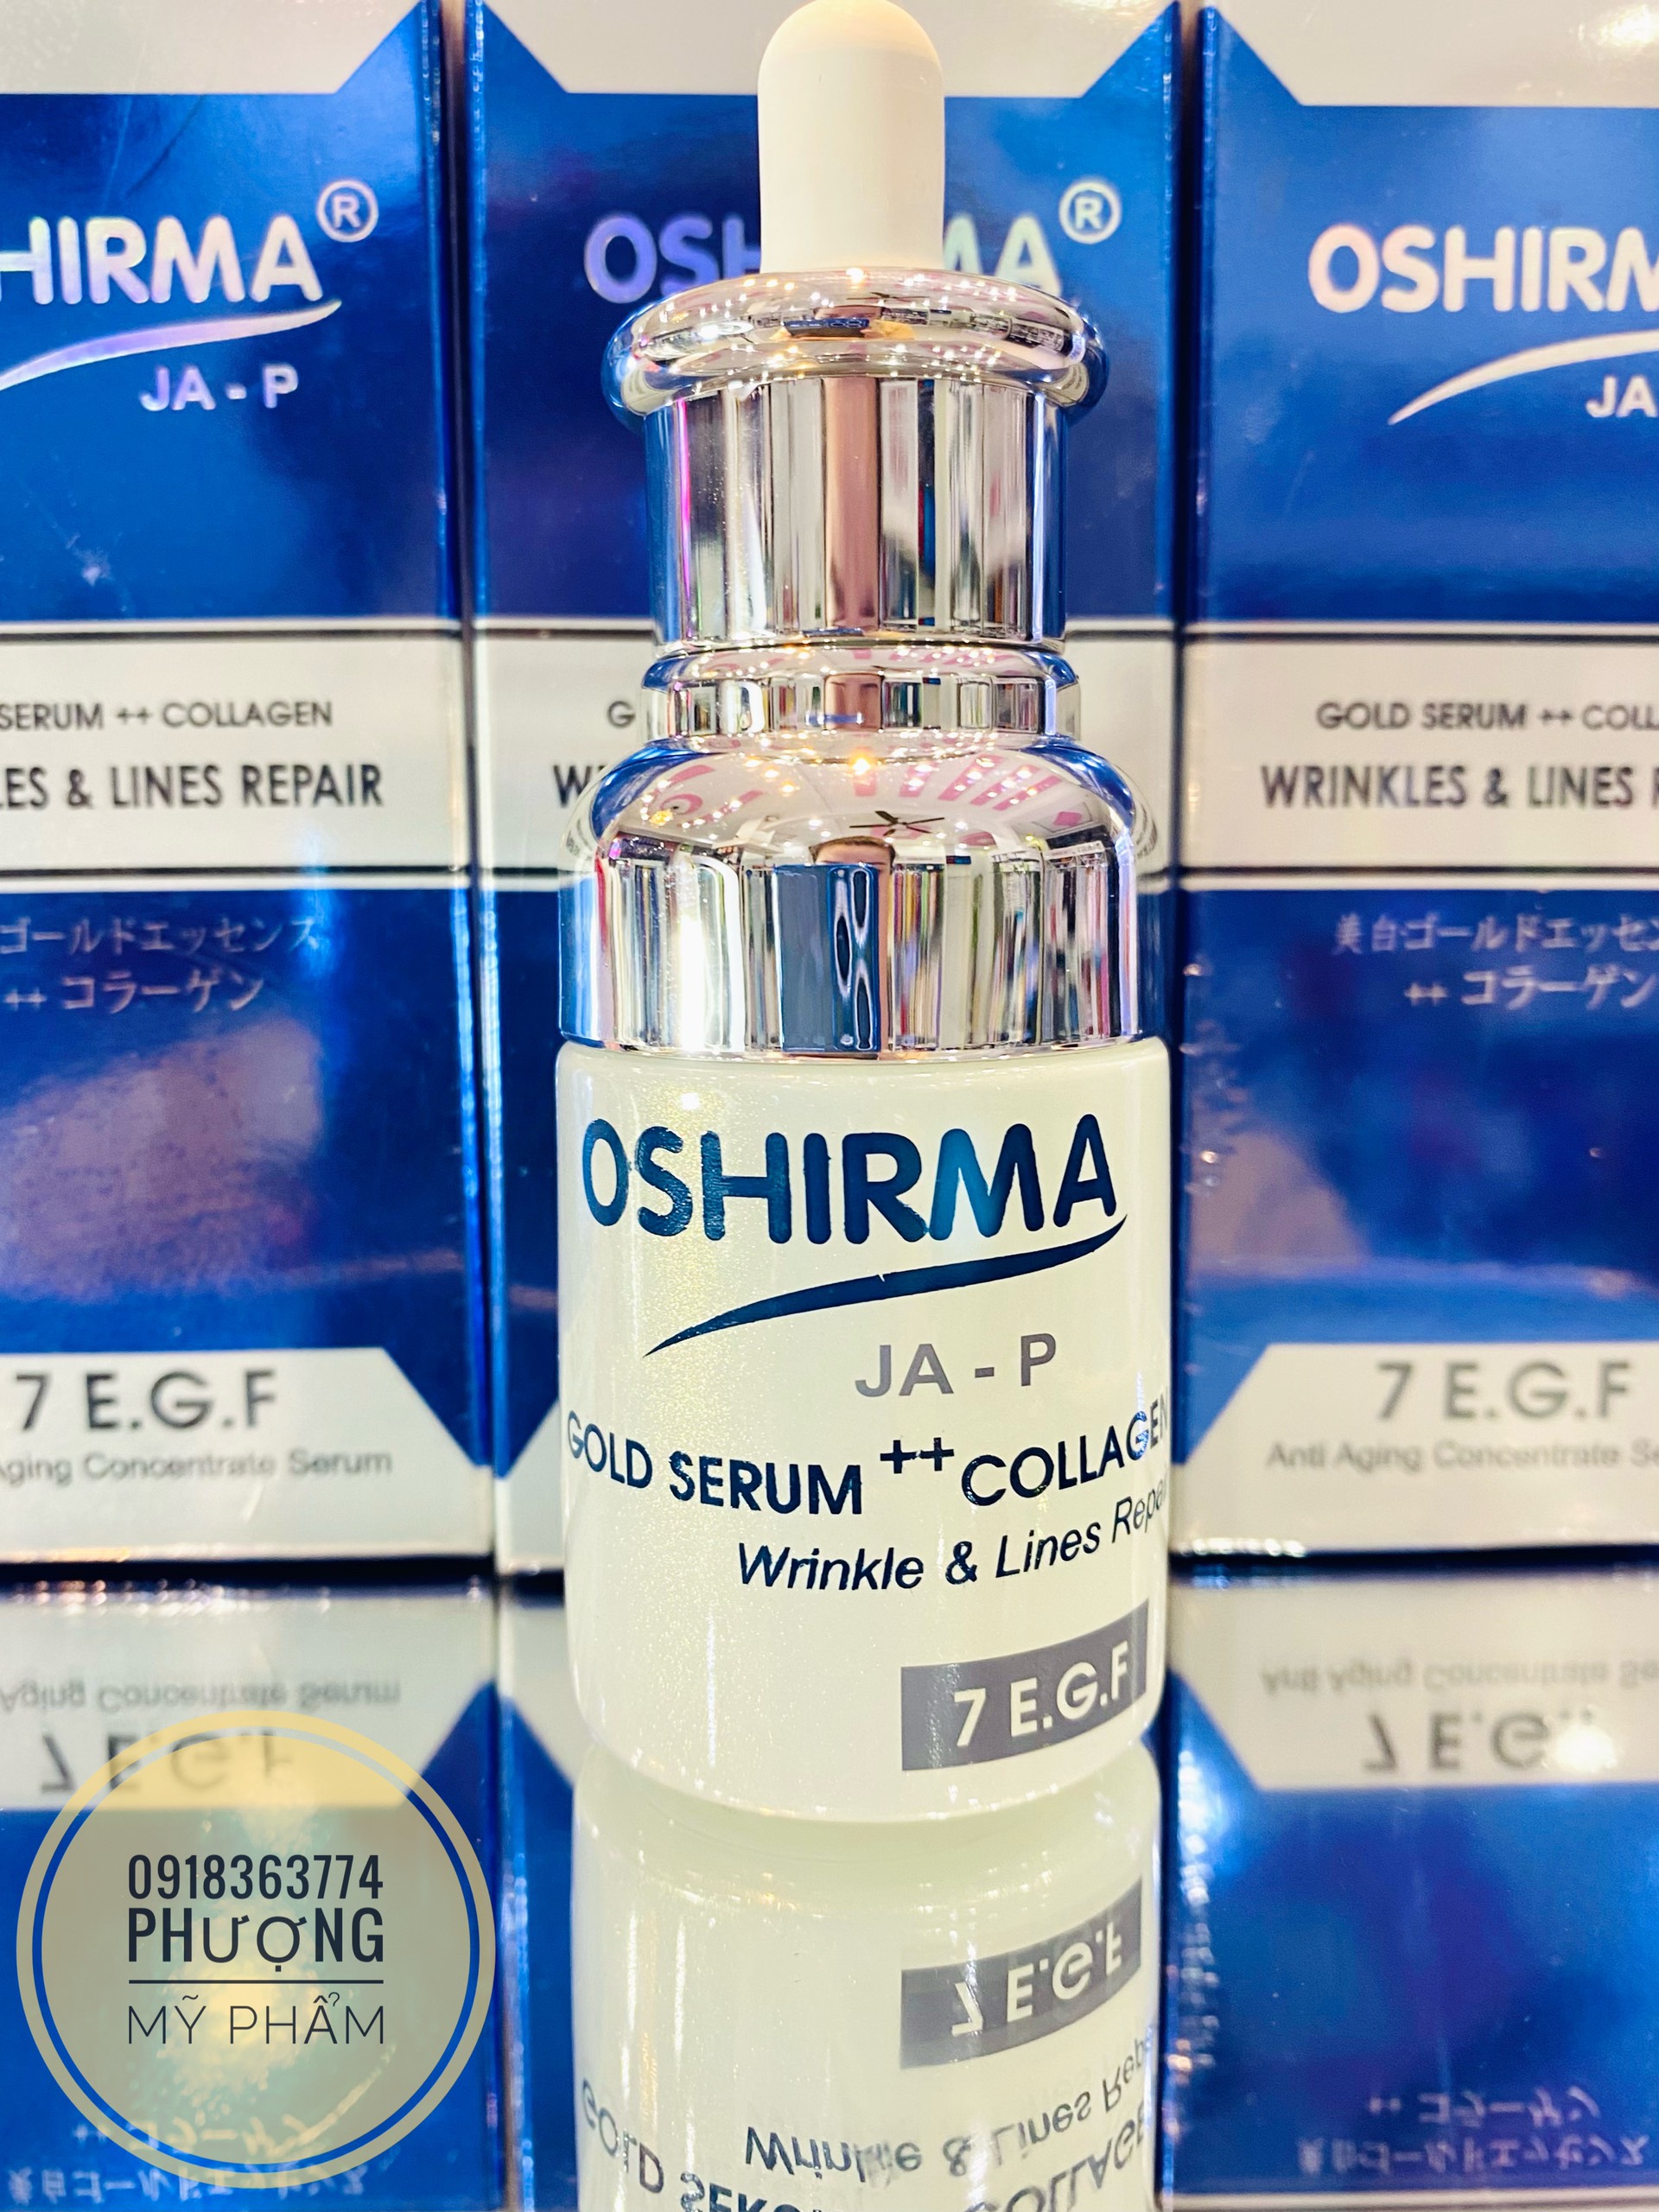 Oshirma Gold Serum++ Collagen có phù hợp với loại da nào?
